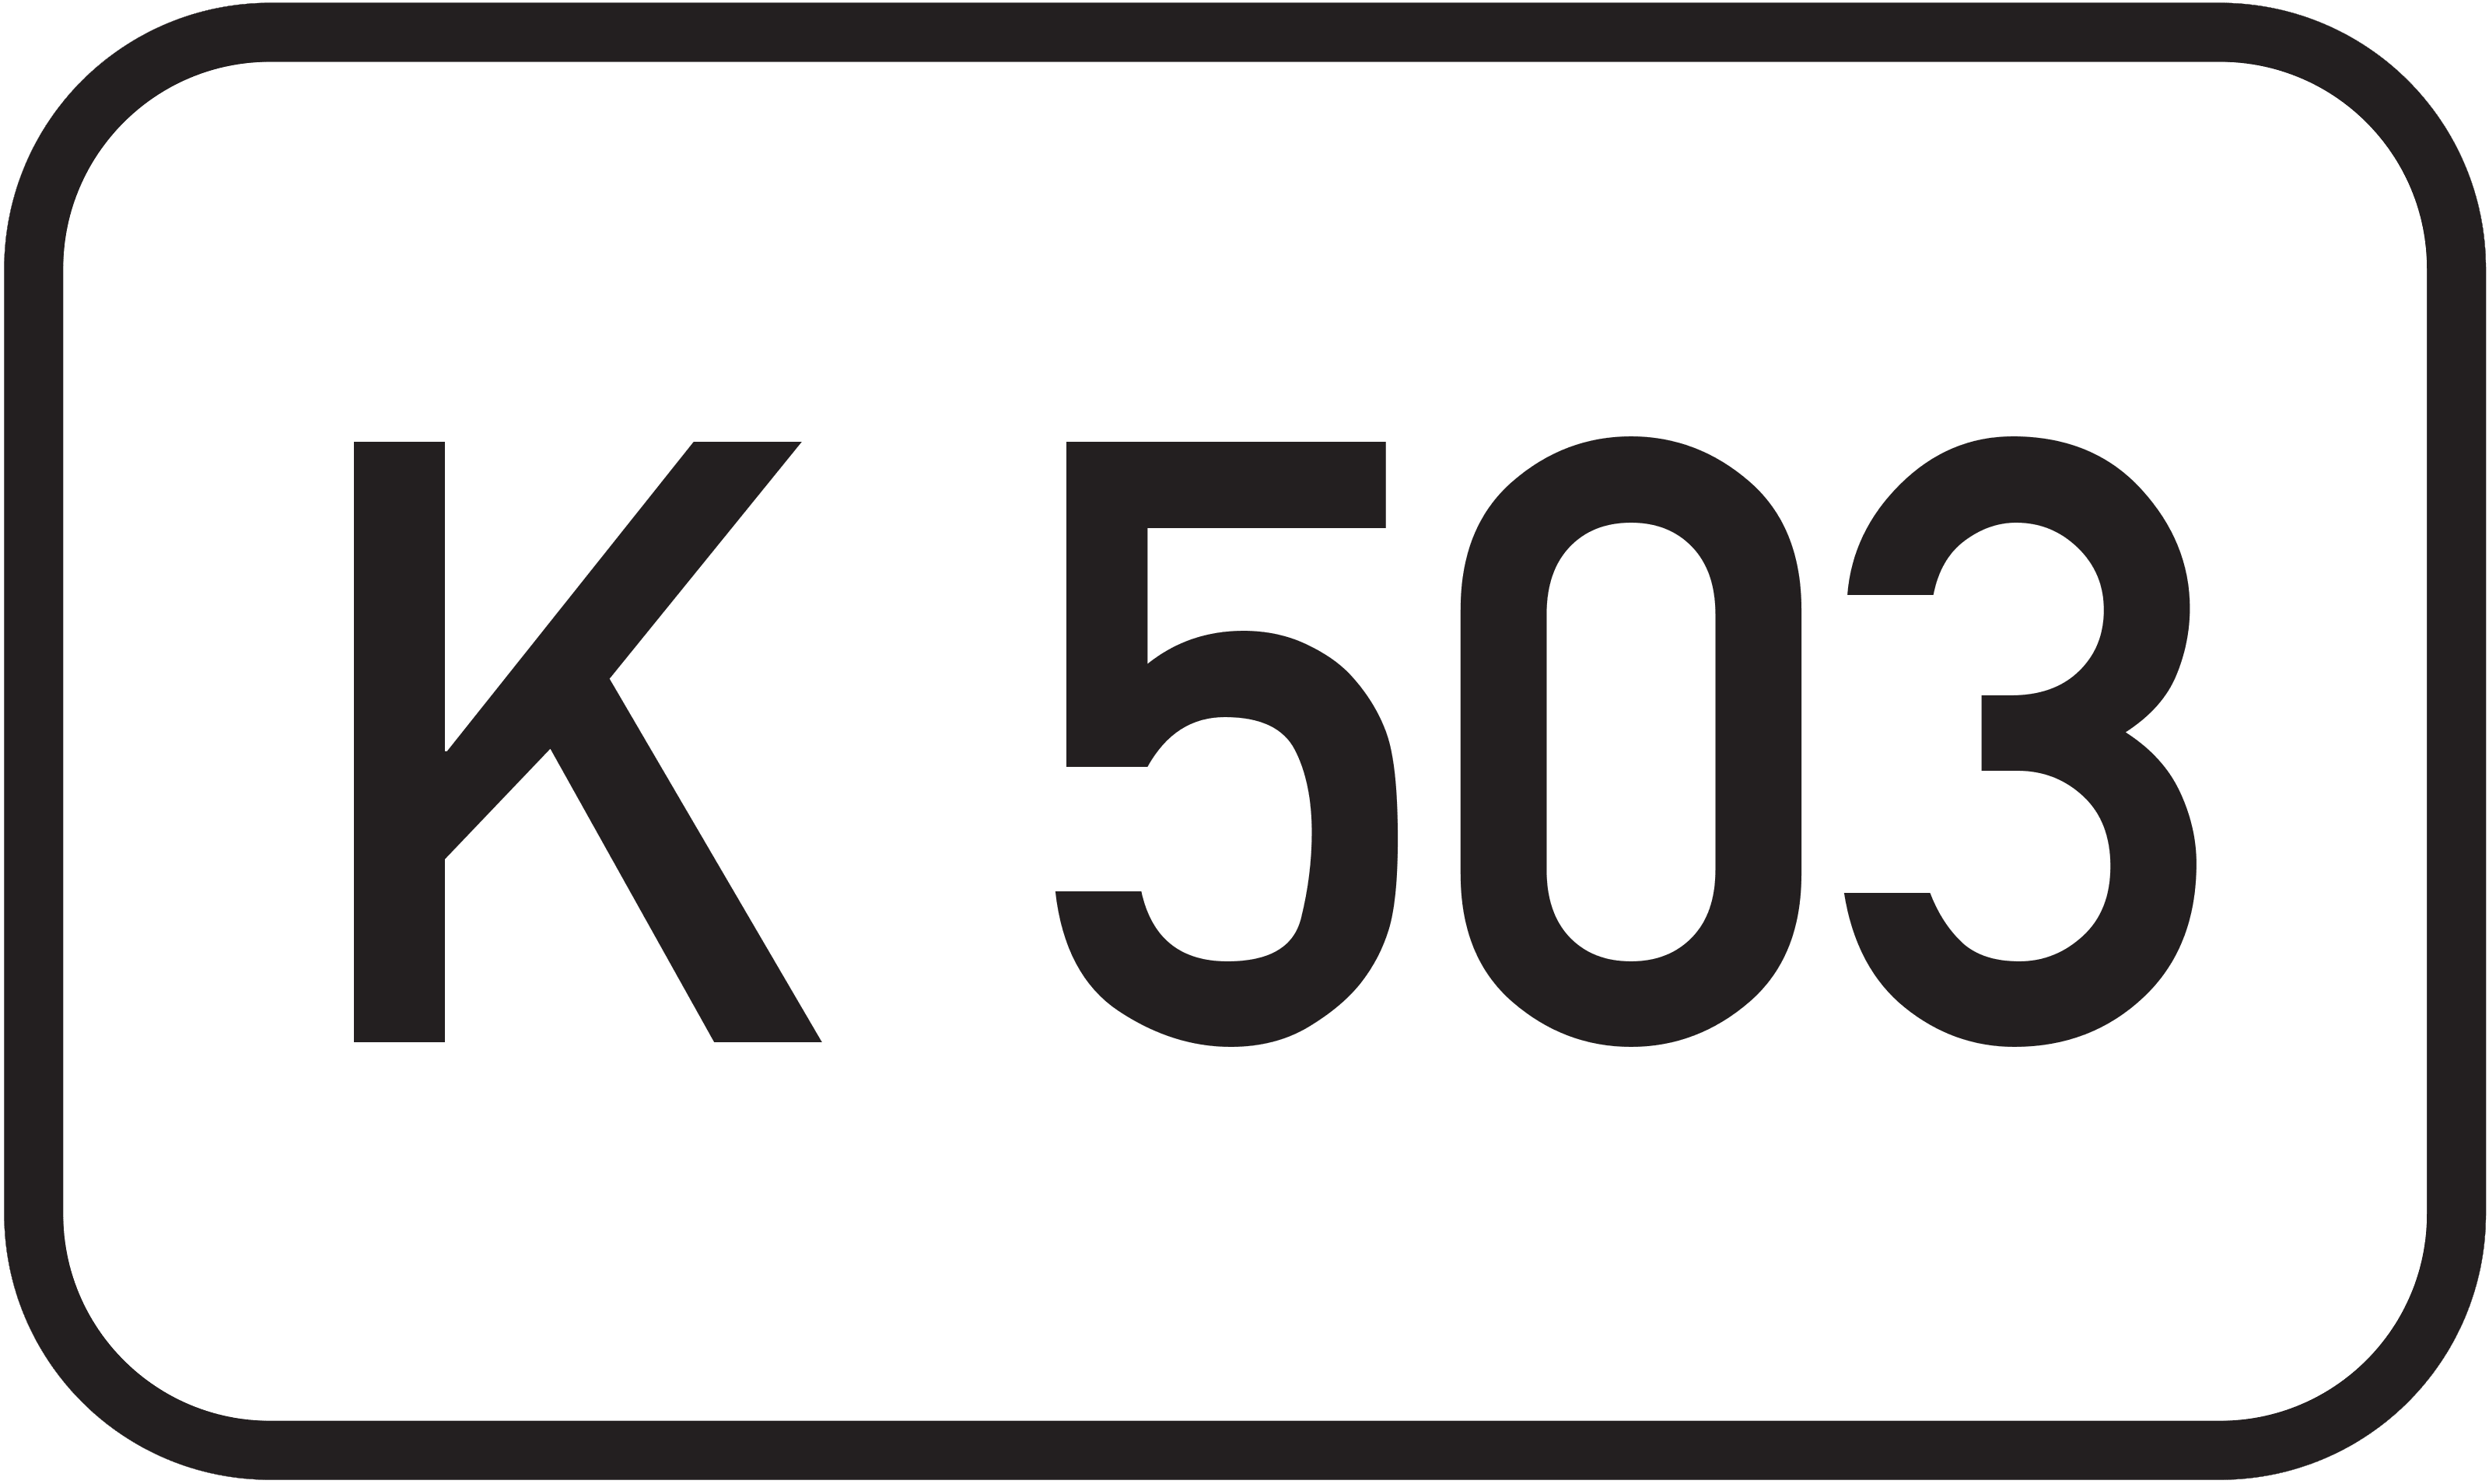 Bundesstraße K 503